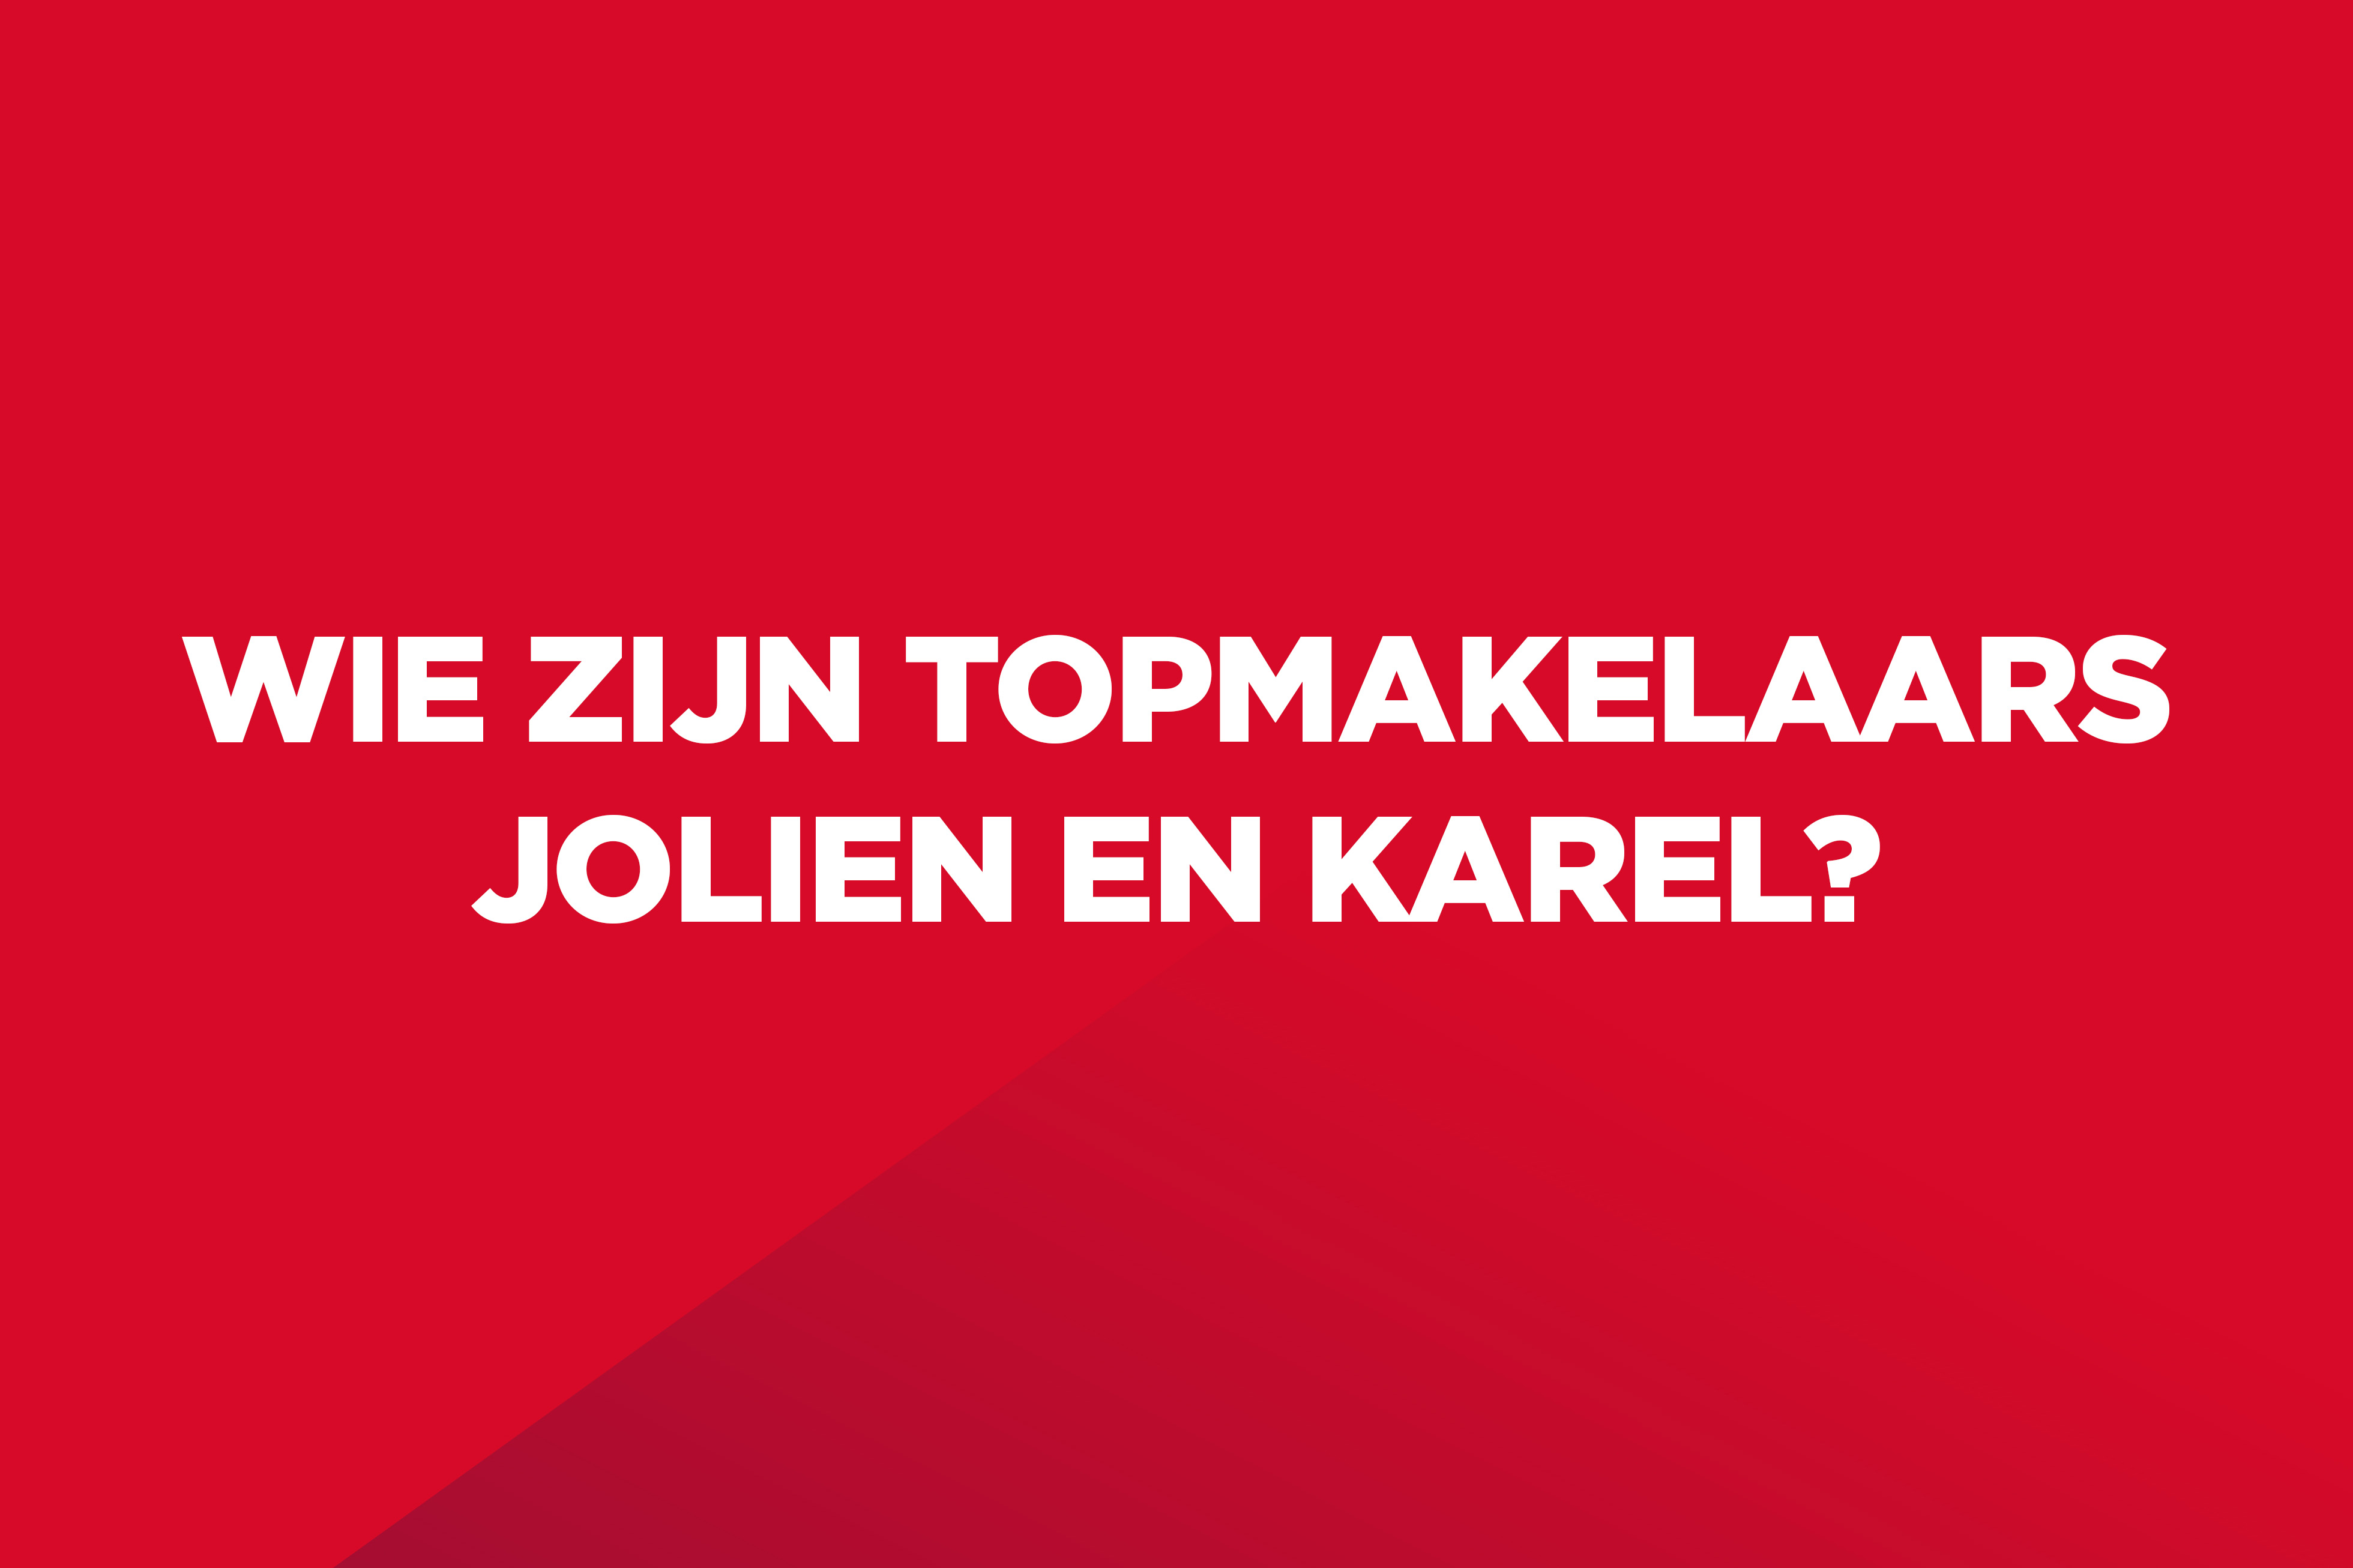 Dit is een rood kleurvlak met witte tekst op: "Wie zijn Topmakelaars Jolien en Karel?".